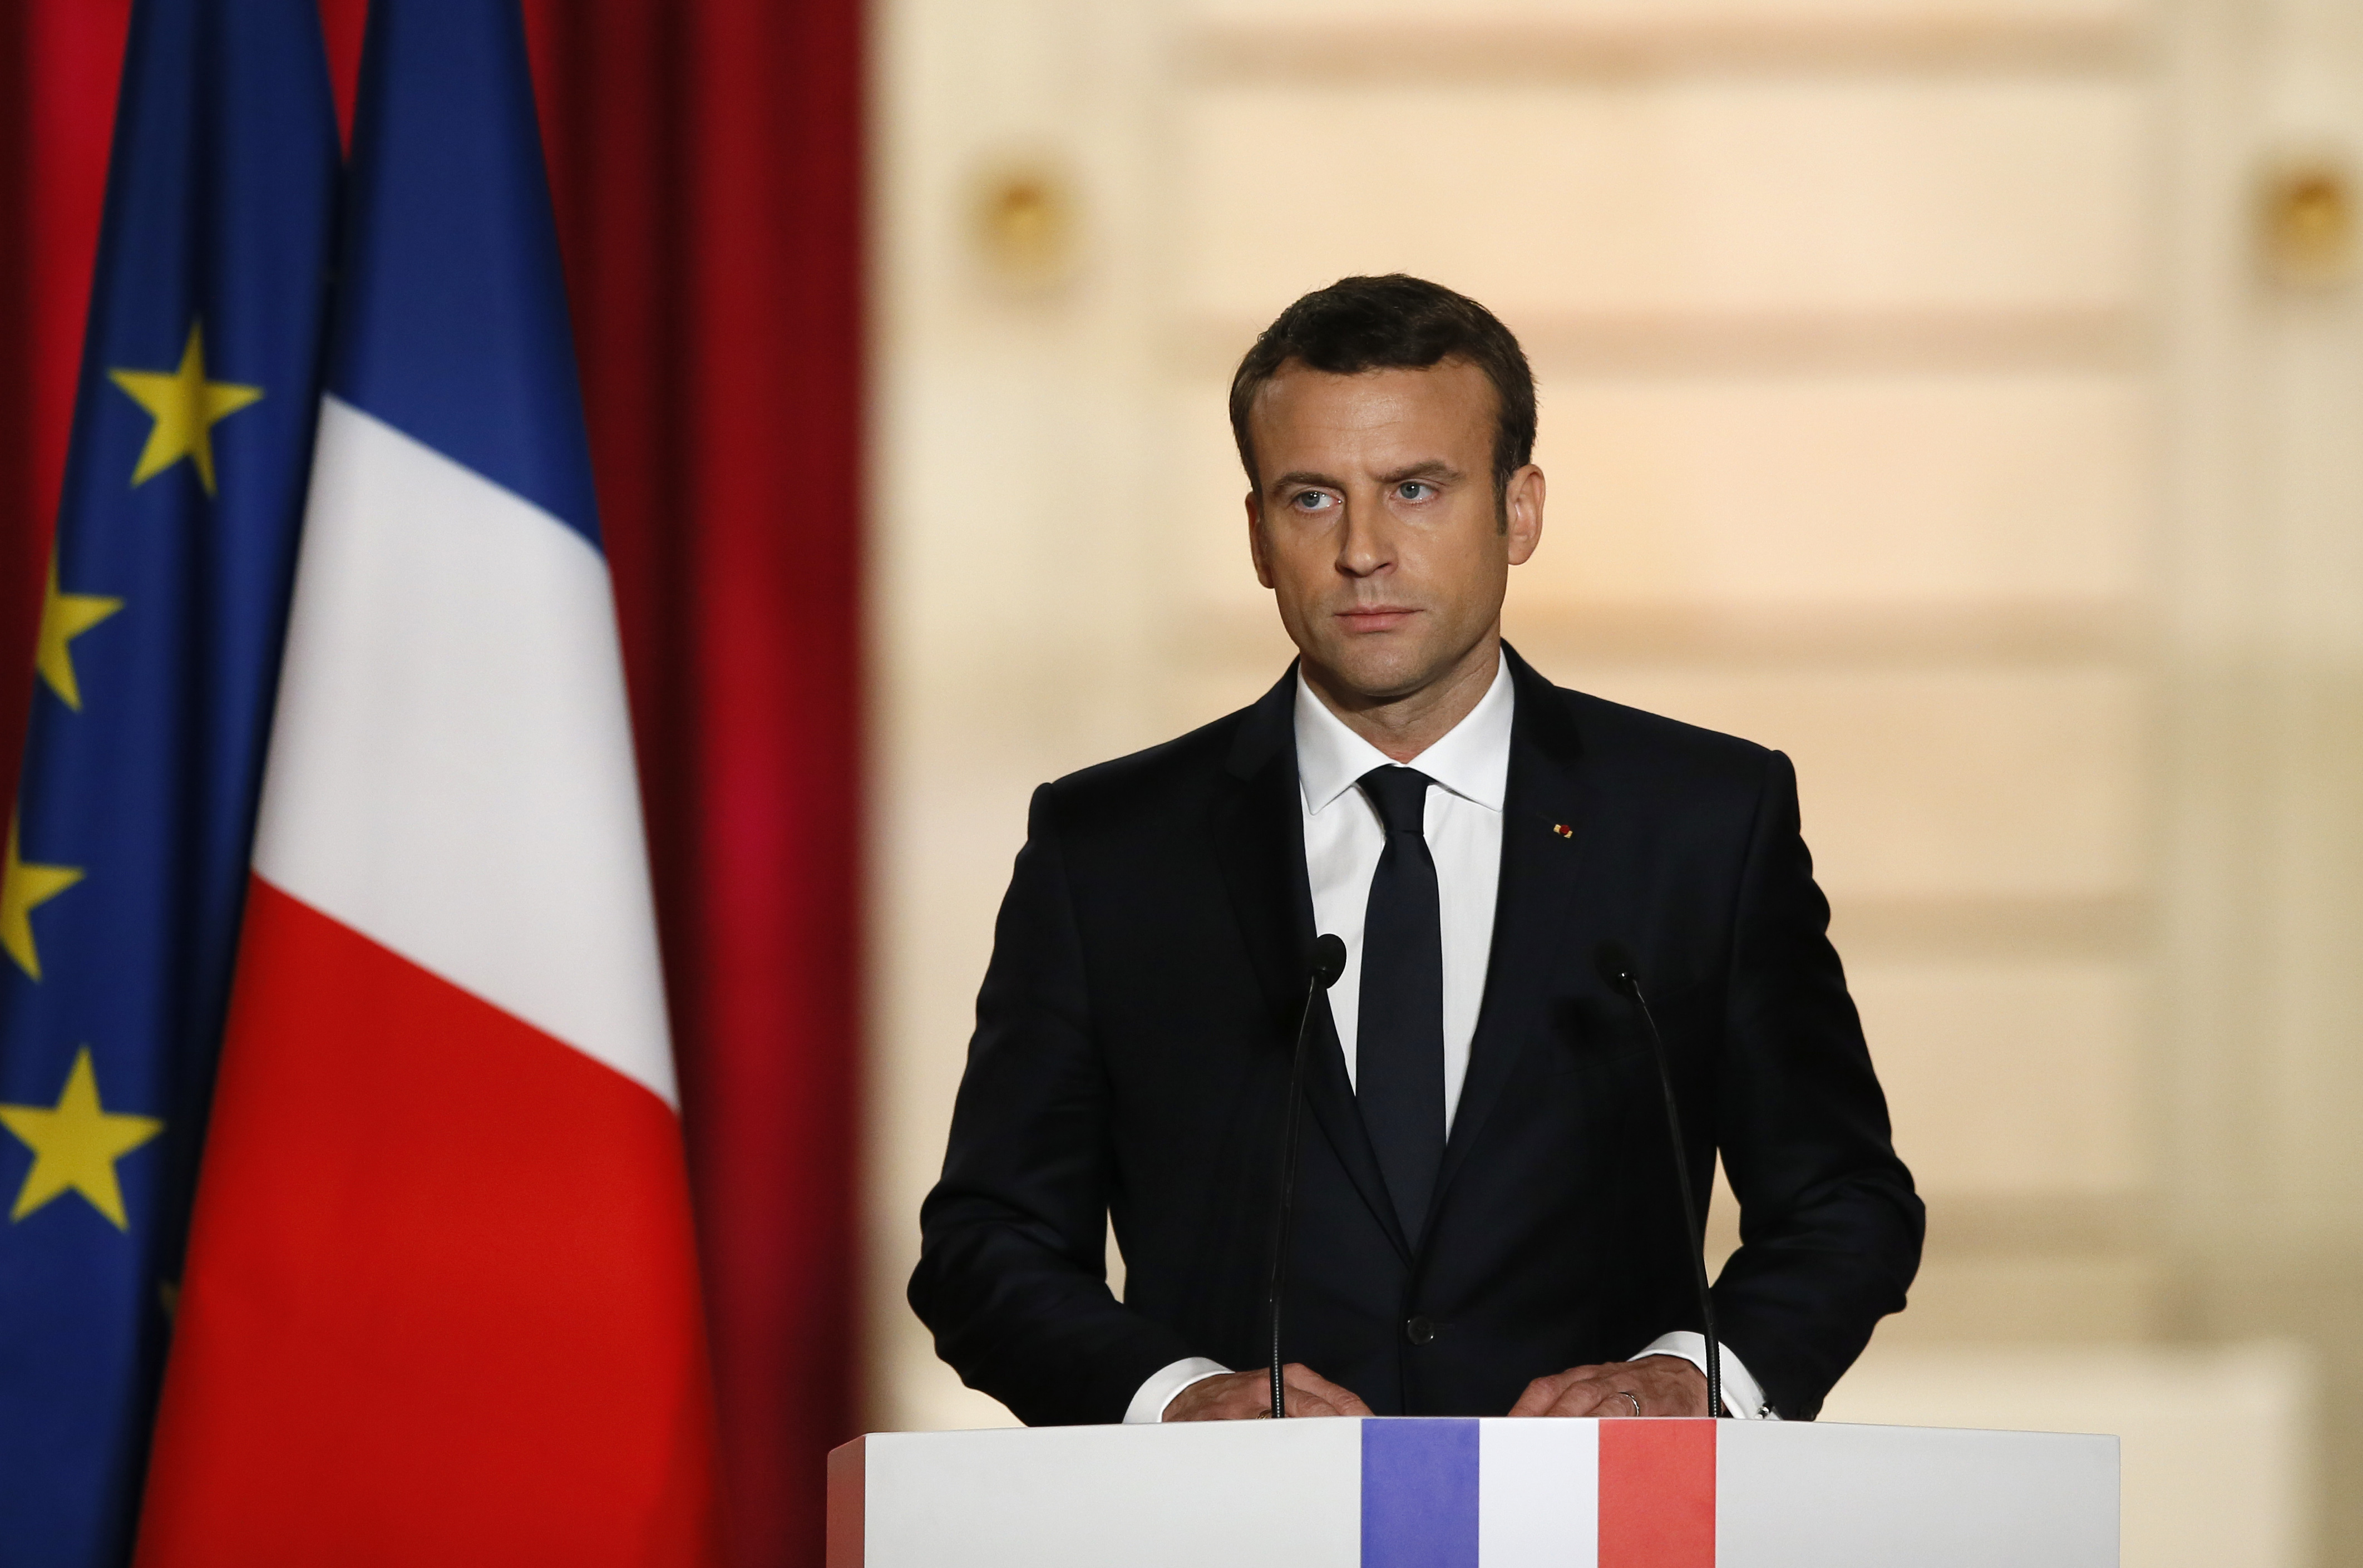 Фото президента франции. Франция Эммануэль Макрон. Эммануэль Макрон на фоне флага Франции.